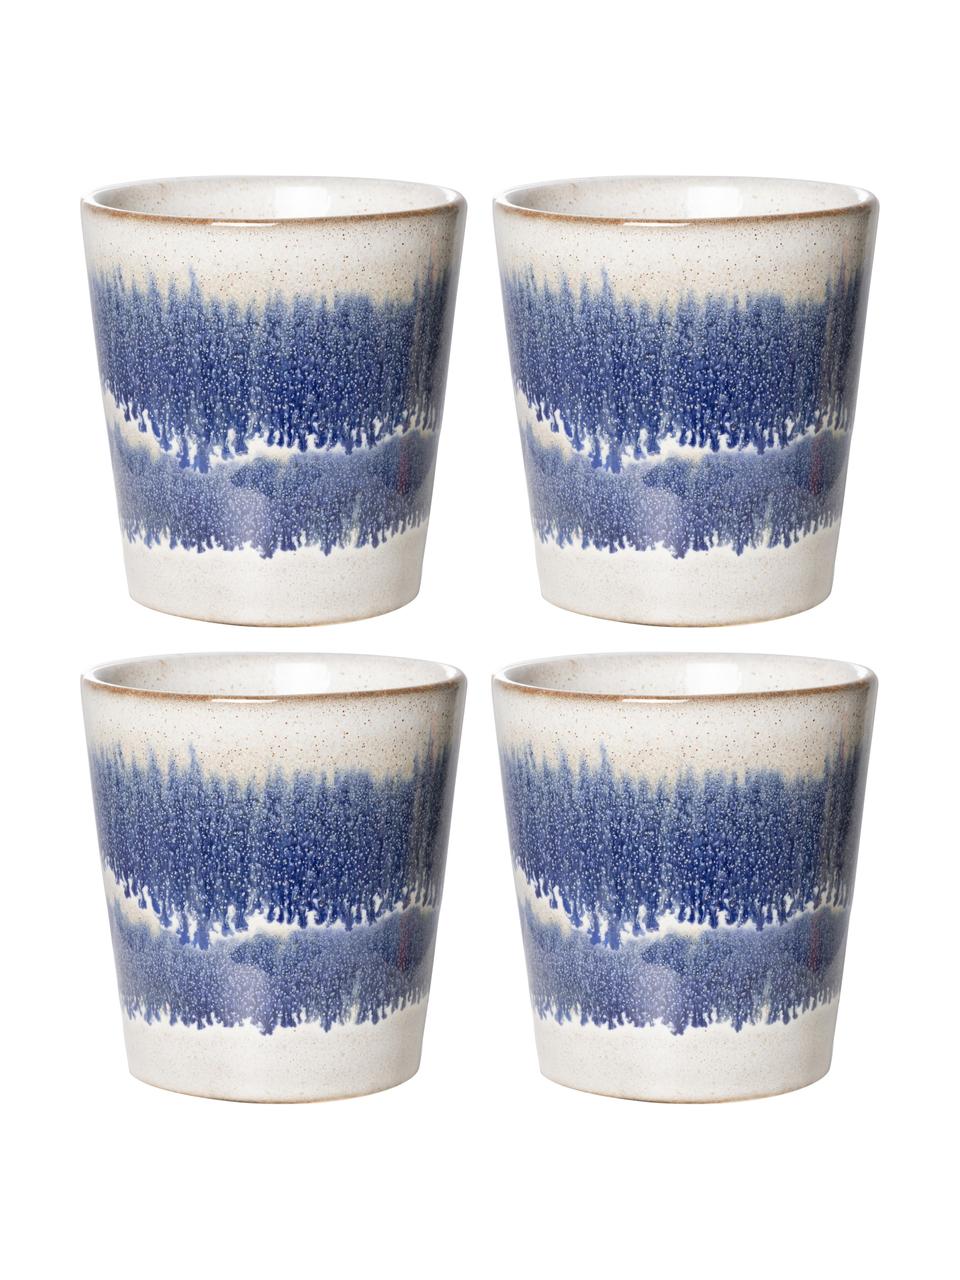 Sada ručně vyrobených XS pohárkův retro stylu 70's, 4 díly, Kamenina, Modrá, bílá, Ø 8 cm, V 8 cm, 180 ml